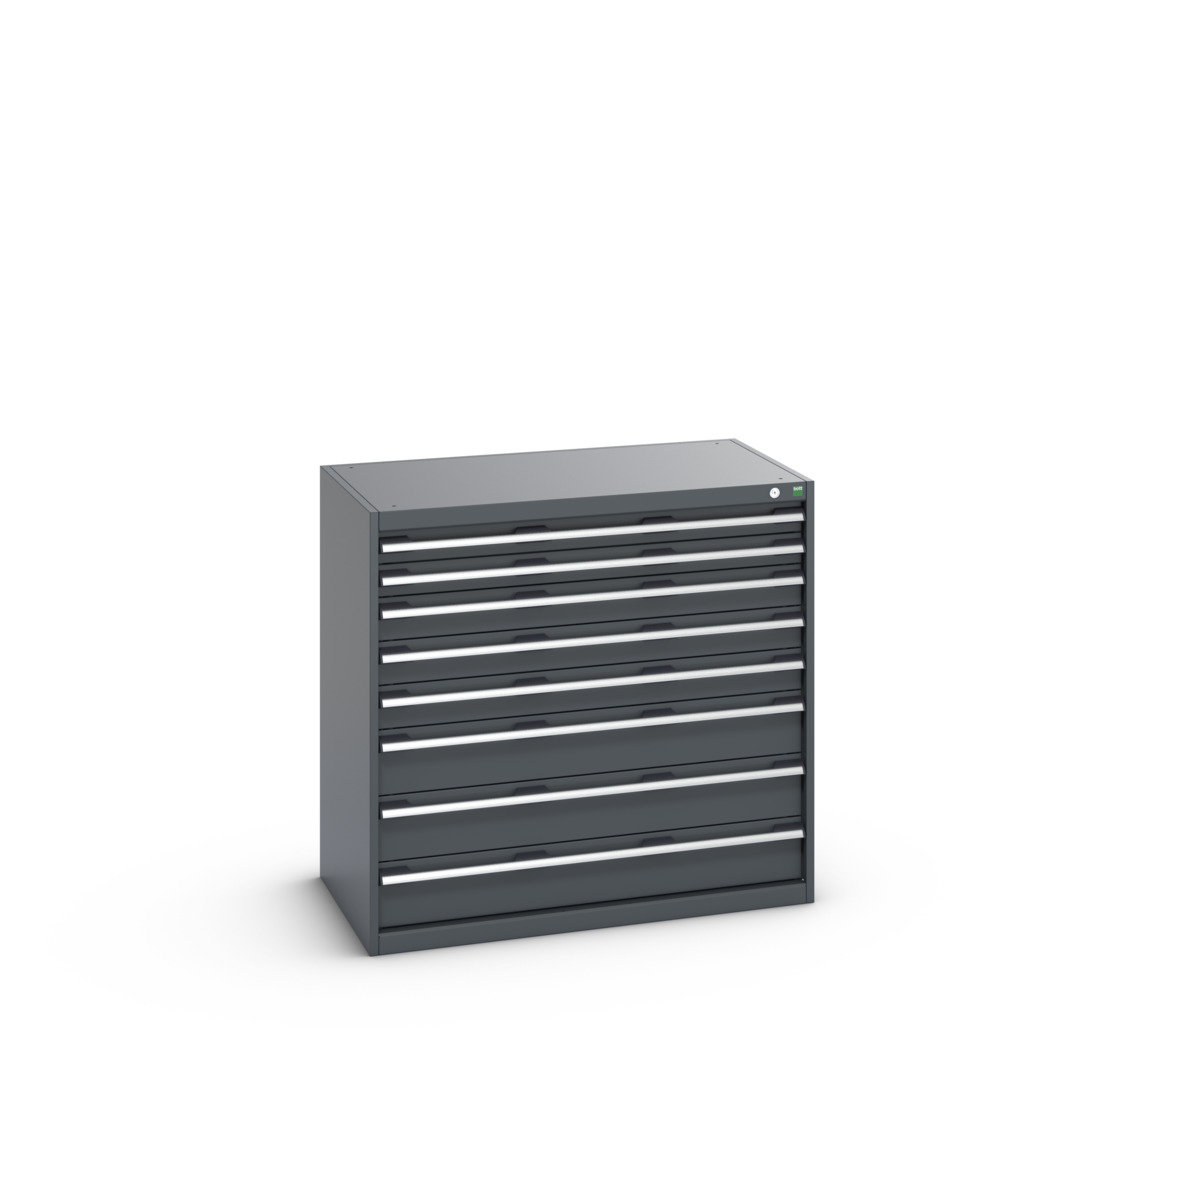 40021034.77V - cubio drawer cabinet